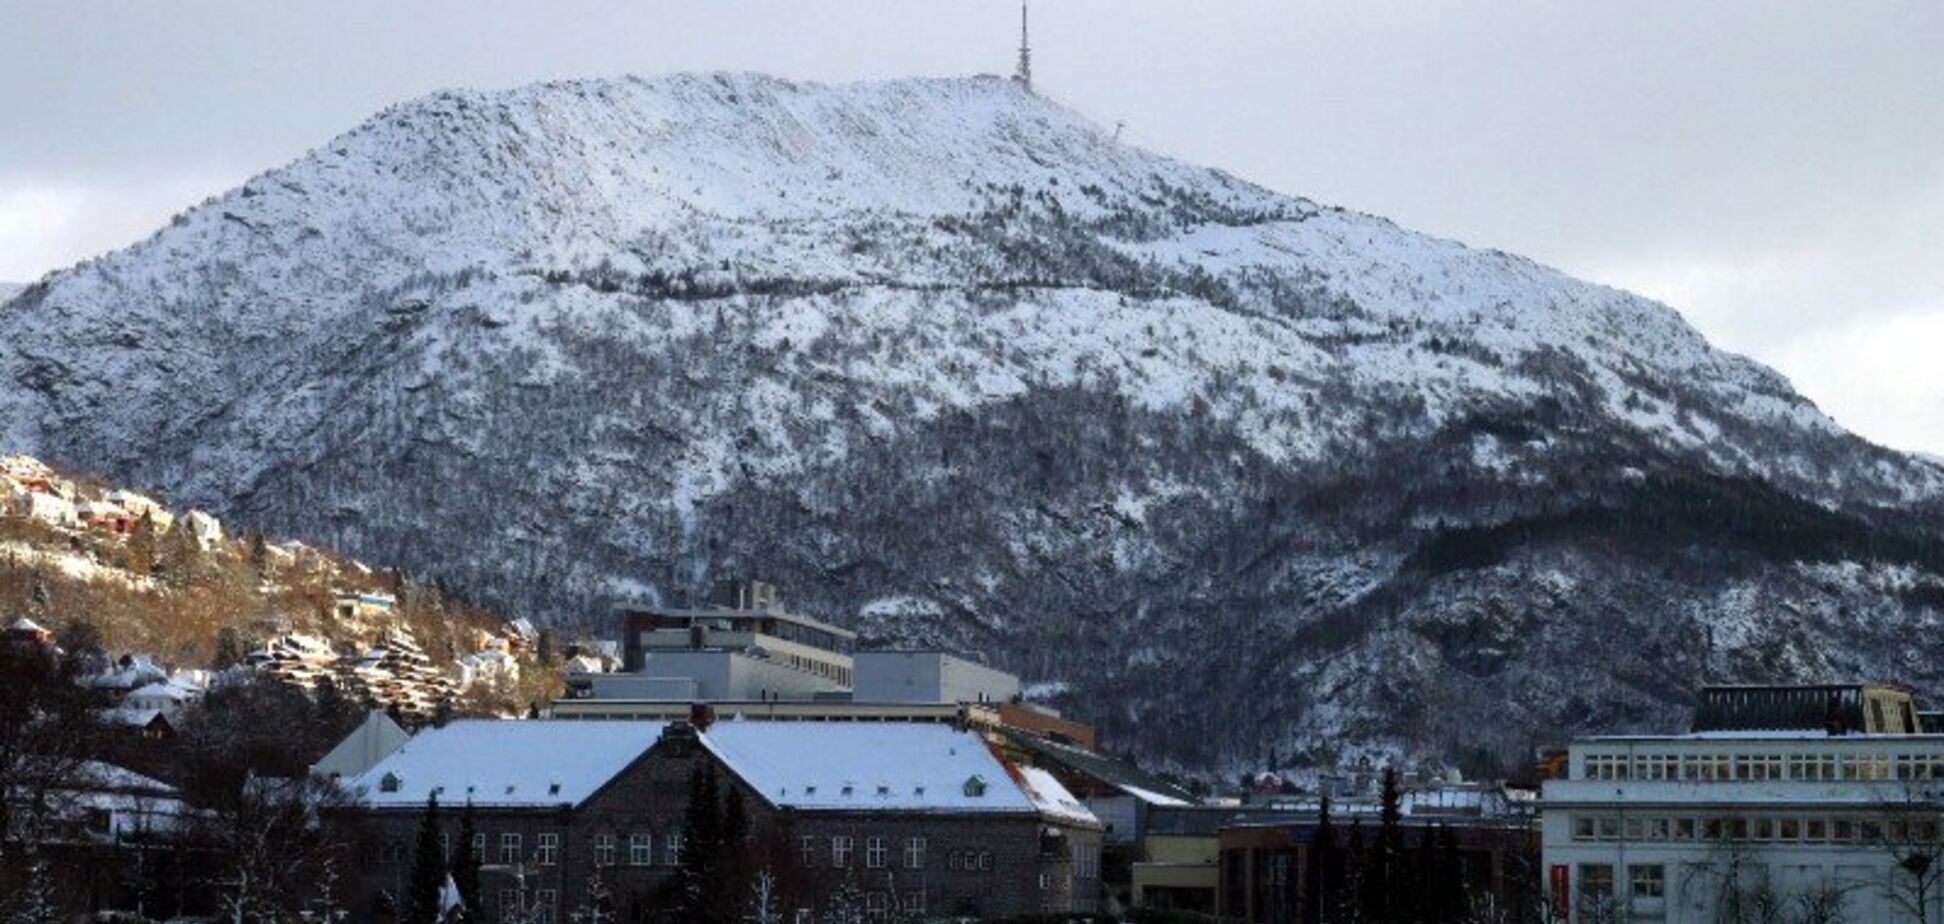 Ще один перевал Дятлова: страшне вбивство у Скандинавії налякало всю Європу